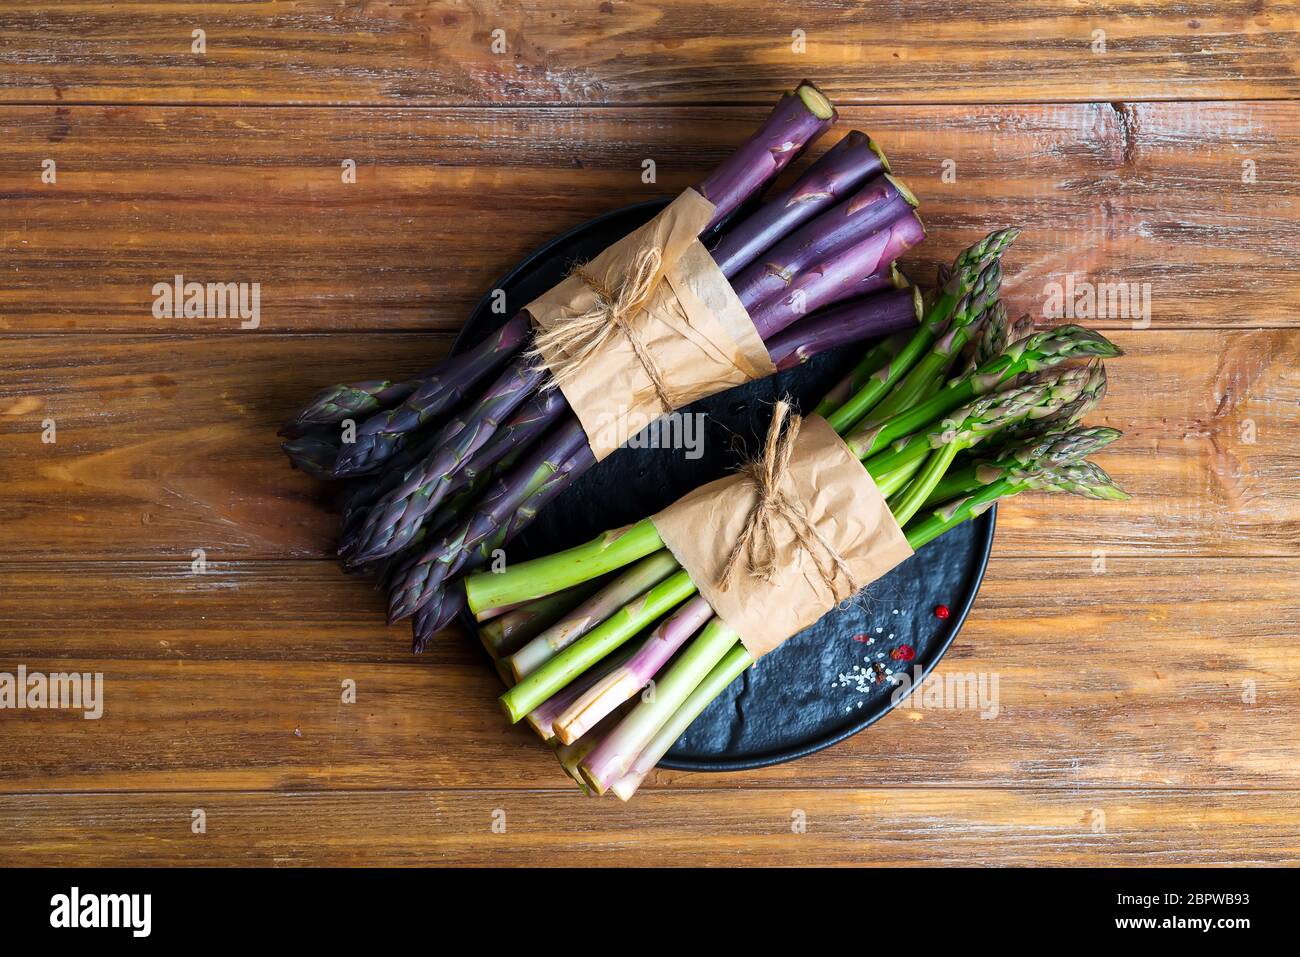 Frais naturel biologique deux paquets de légumes d'asperges verts et violets sur un fond en bois. Banque D'Images